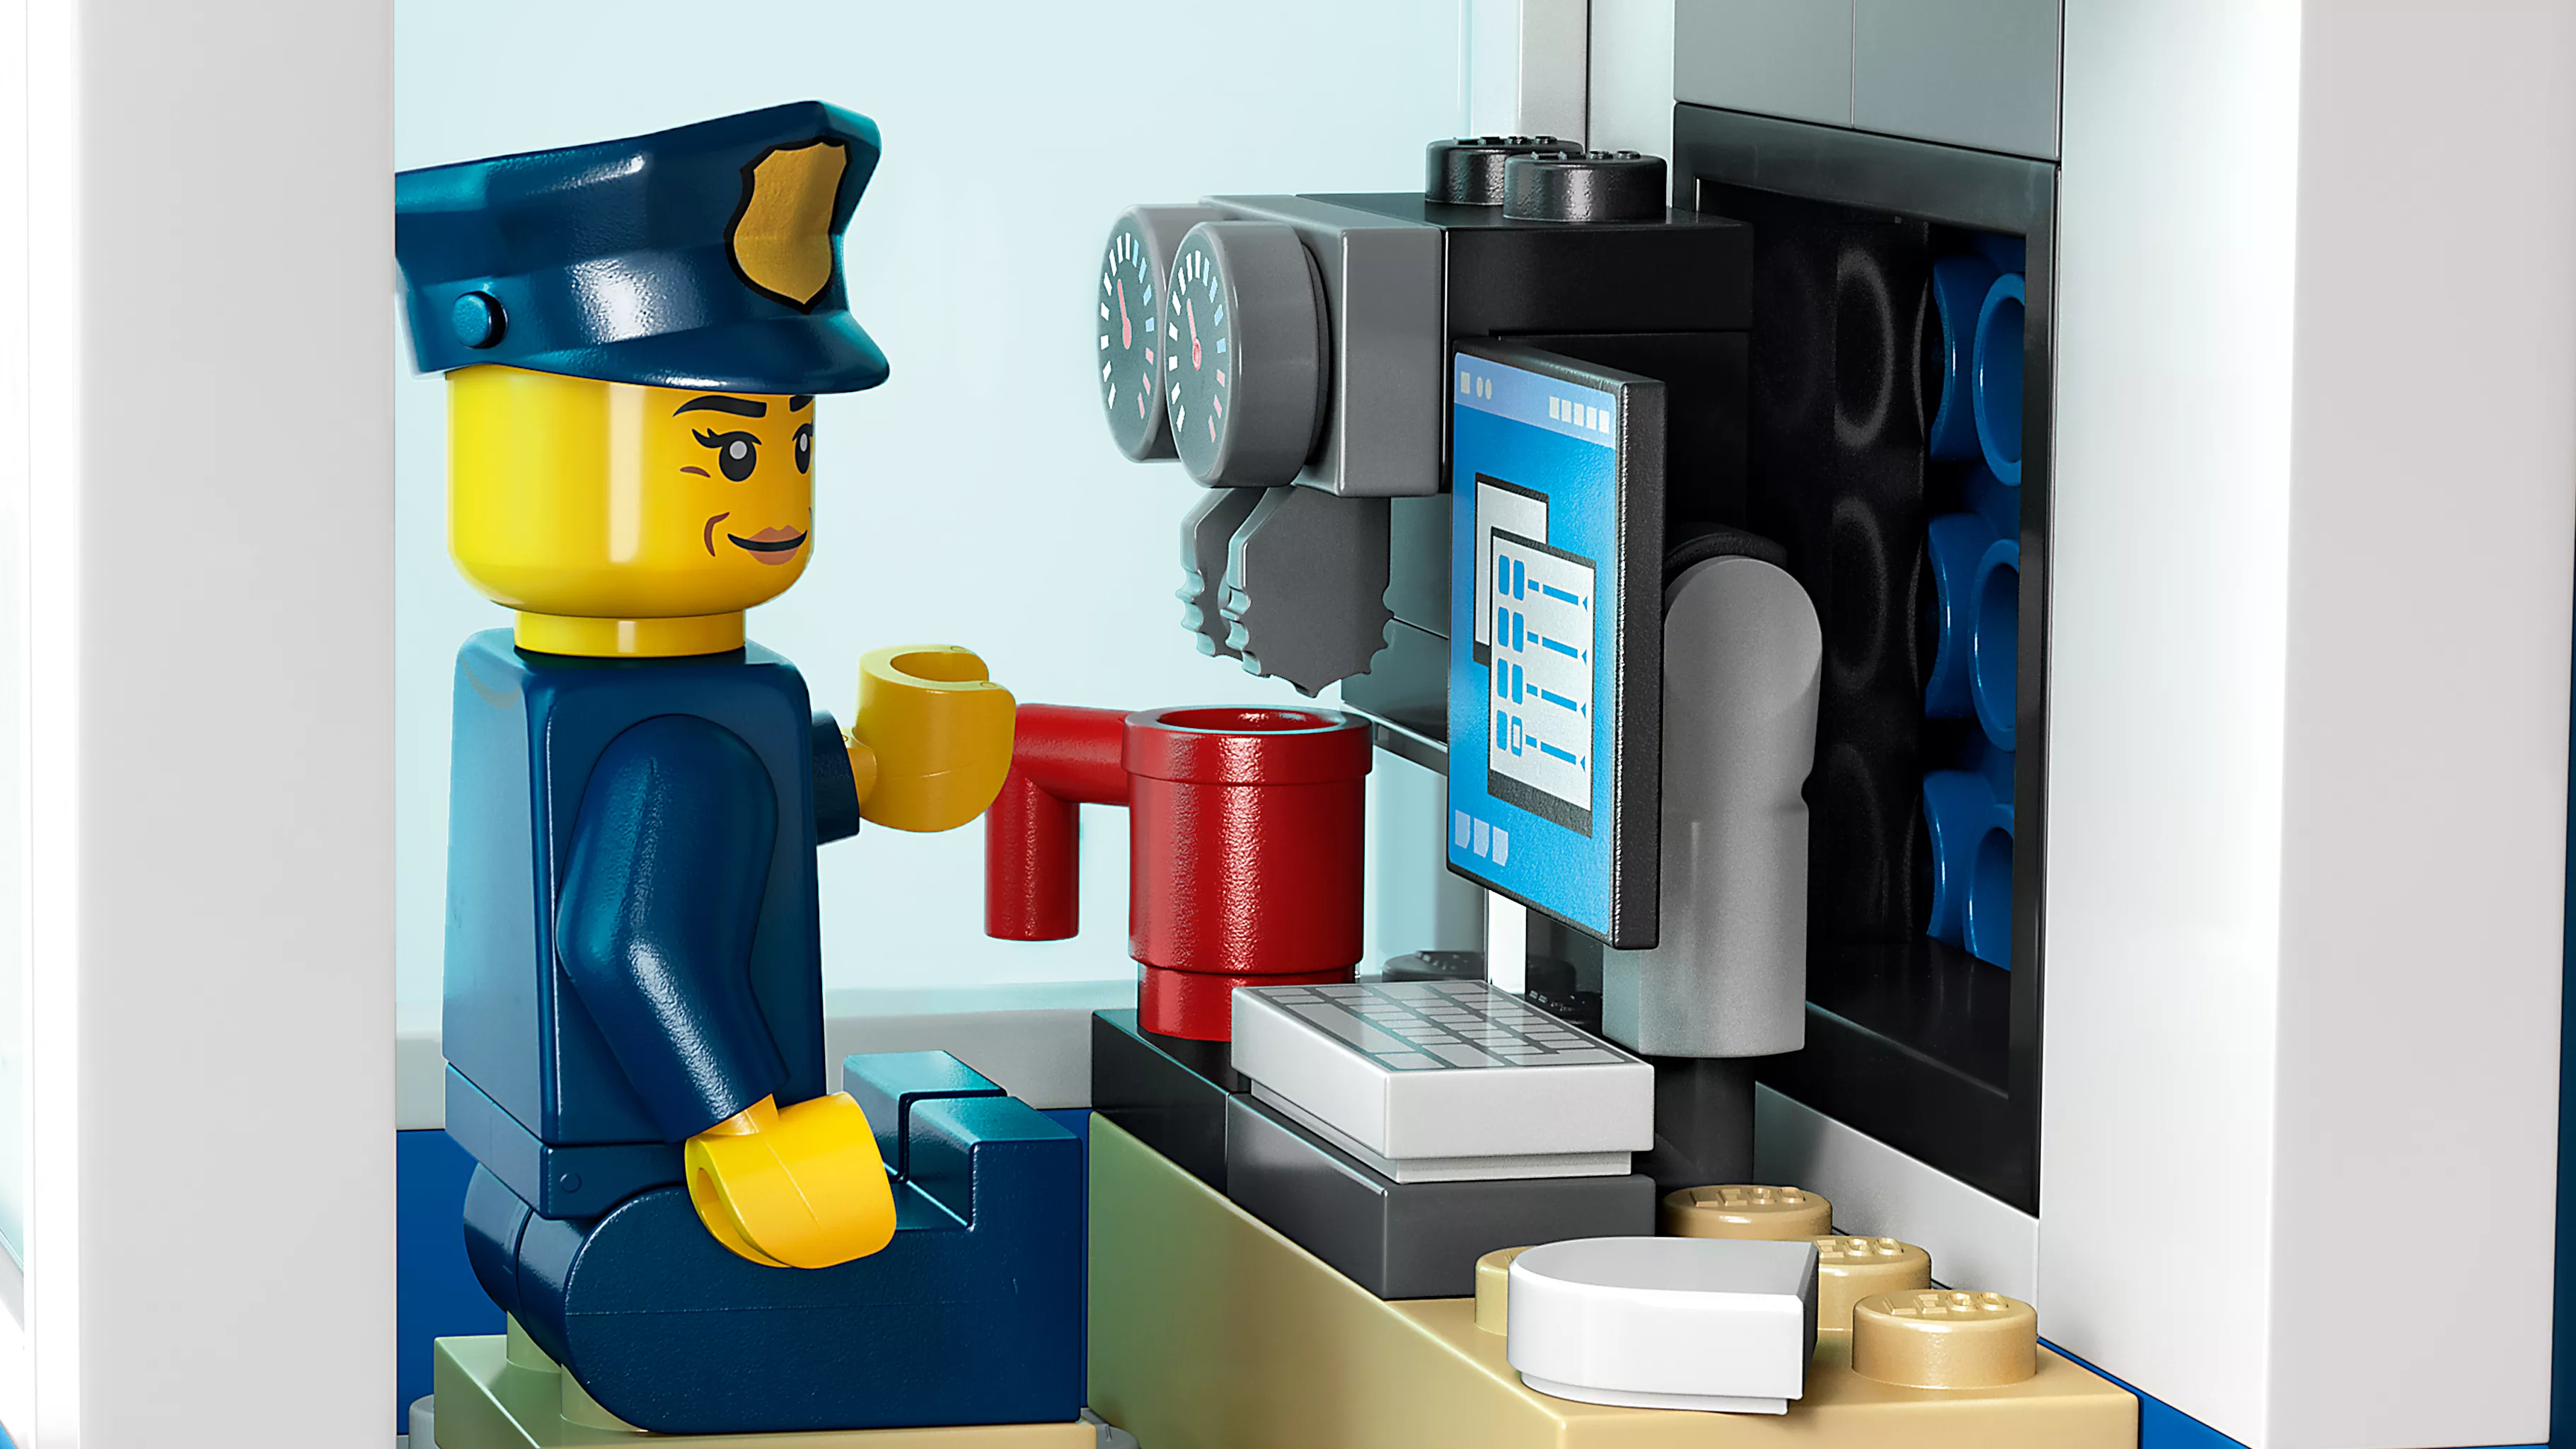 LEGO 60372 Polizeischule